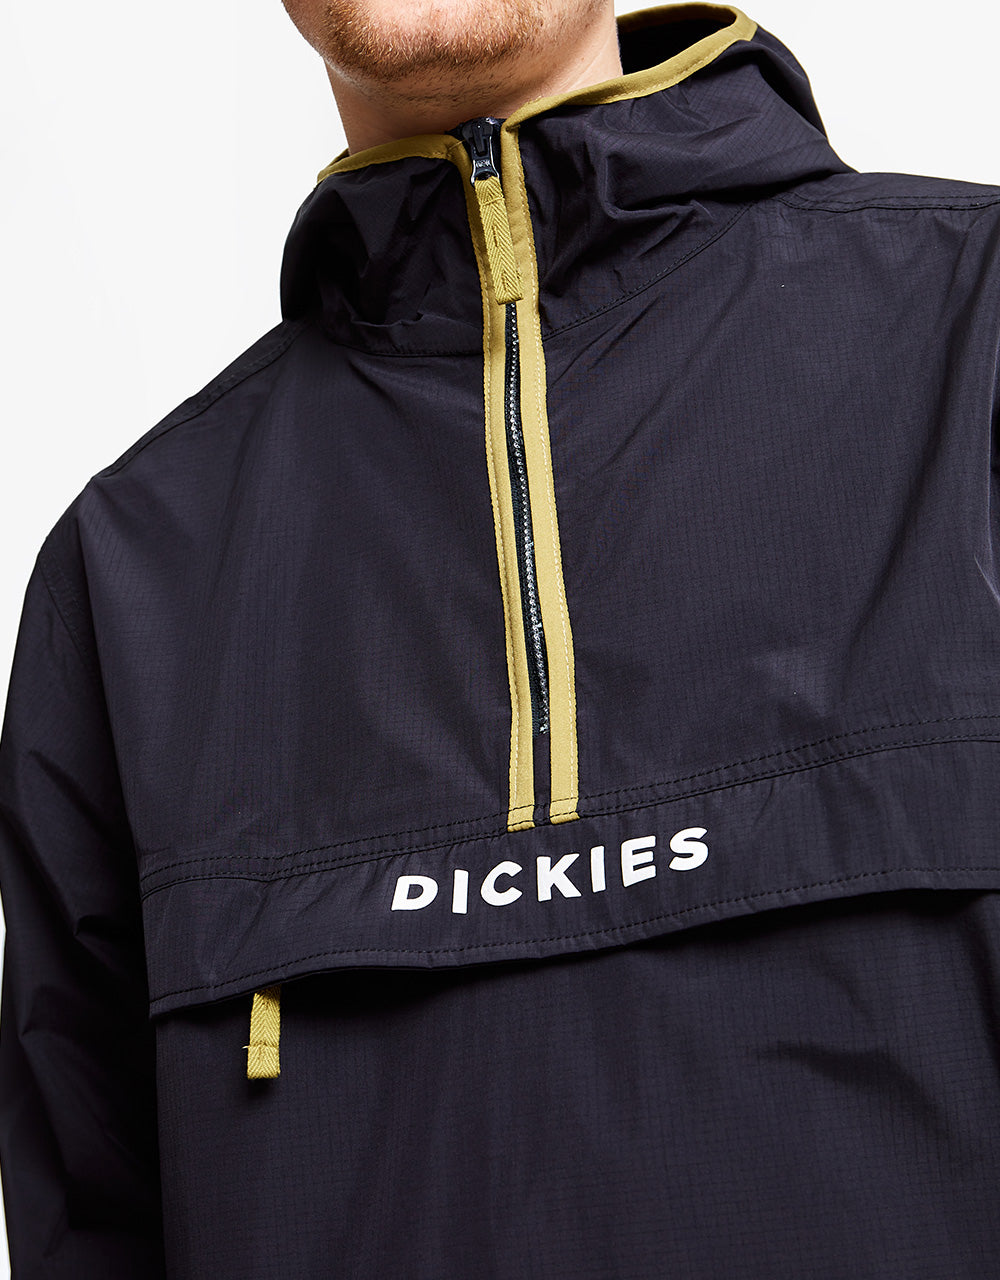 Dickies Pacific Packable Jacket - Black